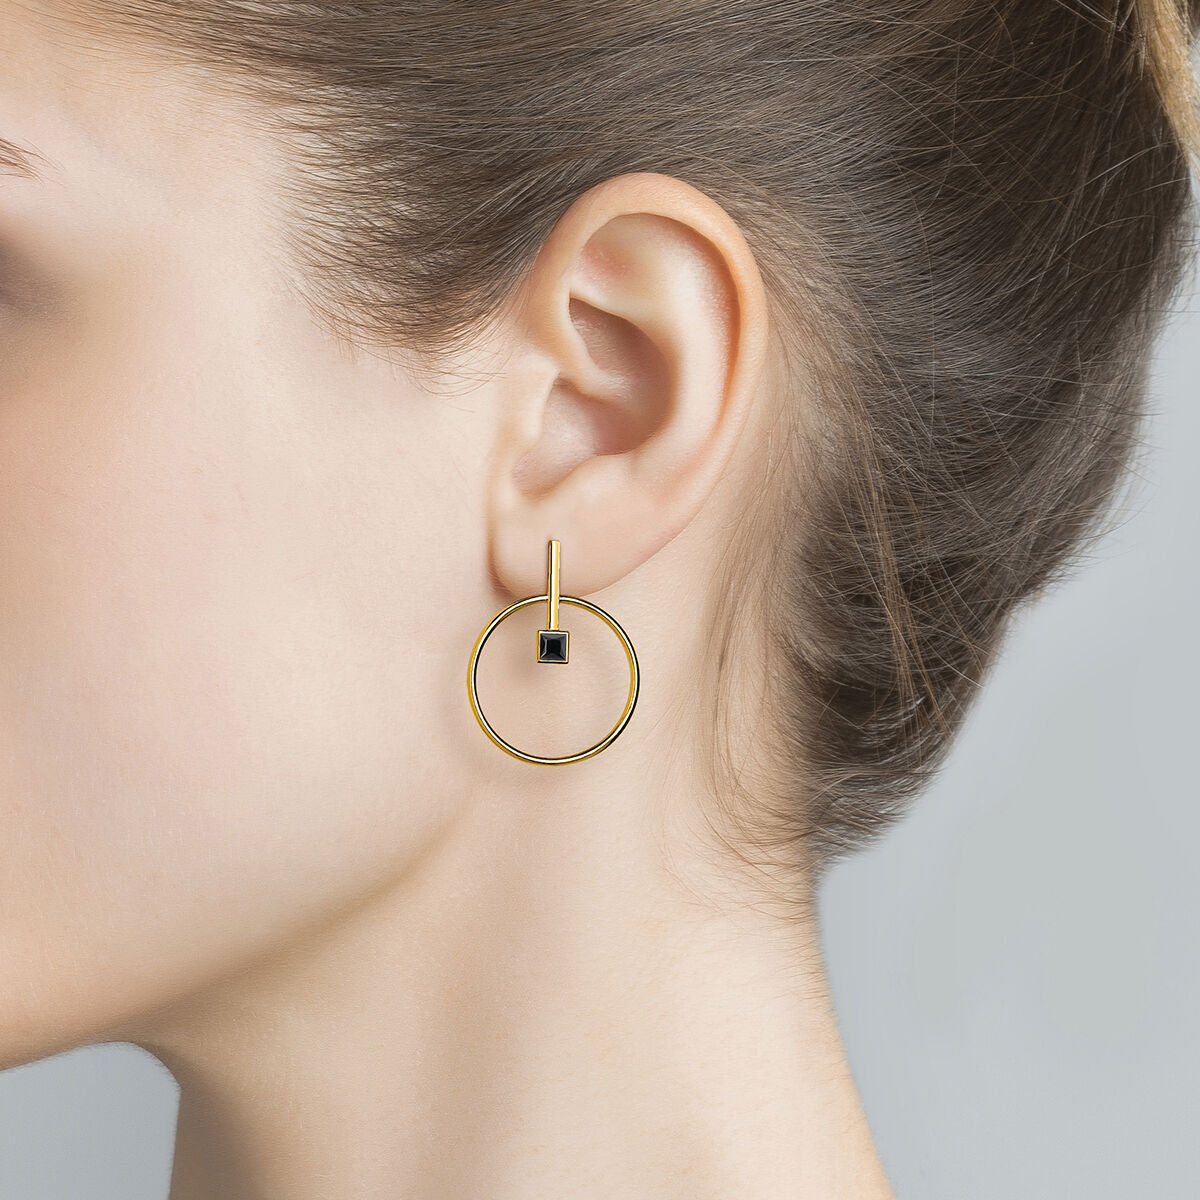 Boucles d'oreilles circulaires avec spinelle argent plaqué or , J04059-02-BSN, hi-res